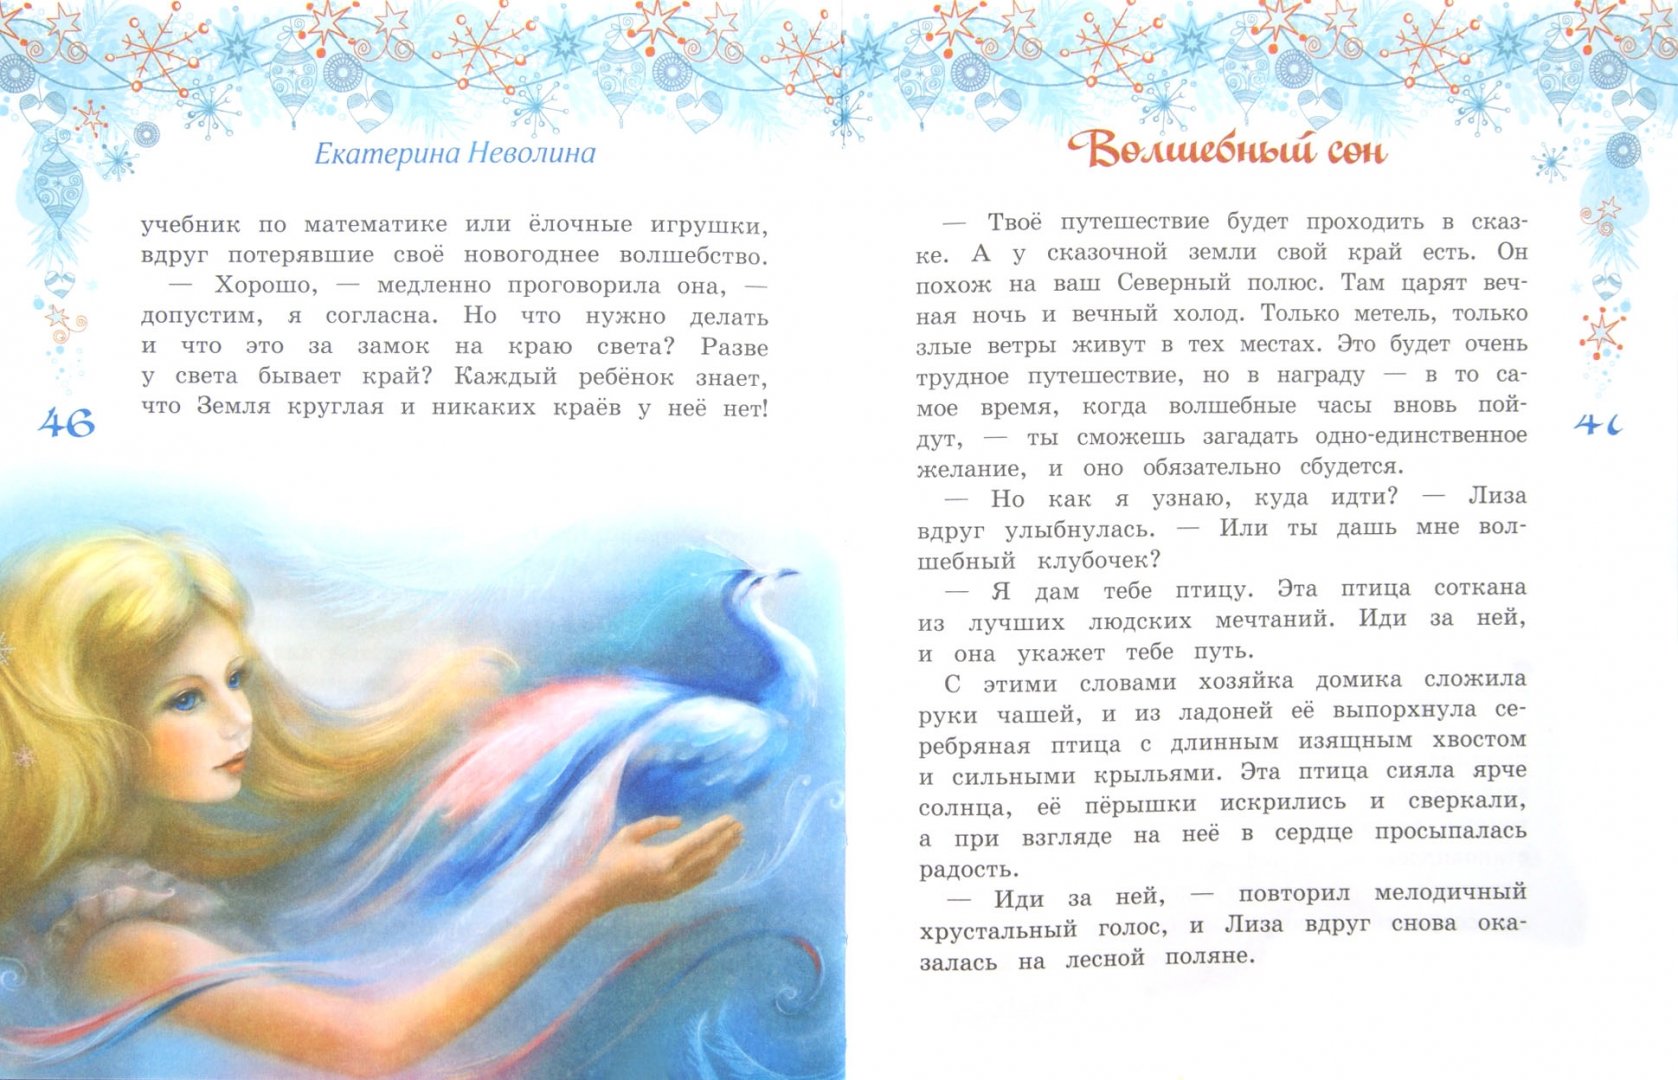 Иллюстрация 1 из 7 для Волшебный сон - Екатерина Неволина | Лабиринт - книги. Источник: Лабиринт